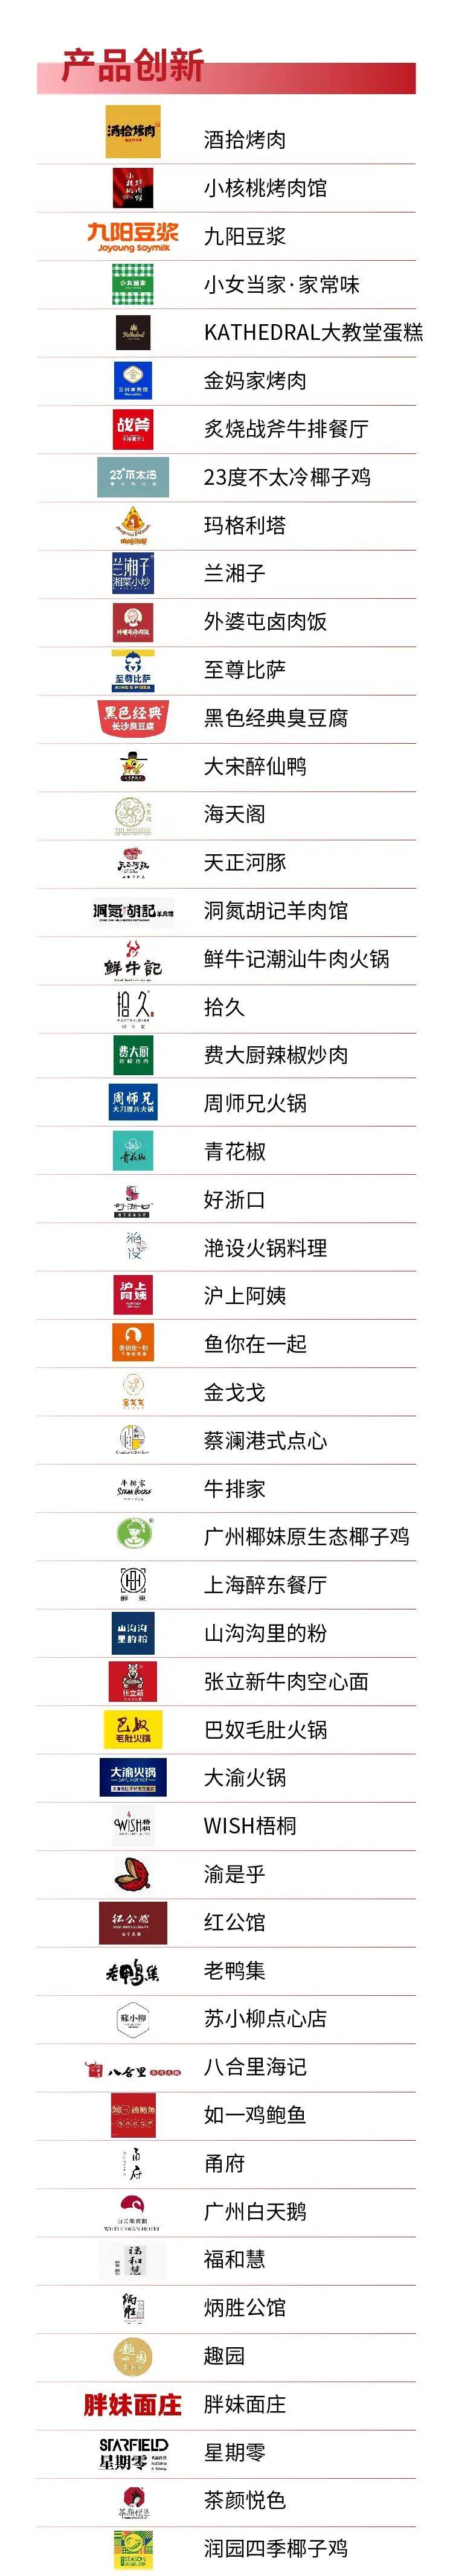 这180个品牌入围“中国餐饮创新力100”初选名单！快看看有没有你